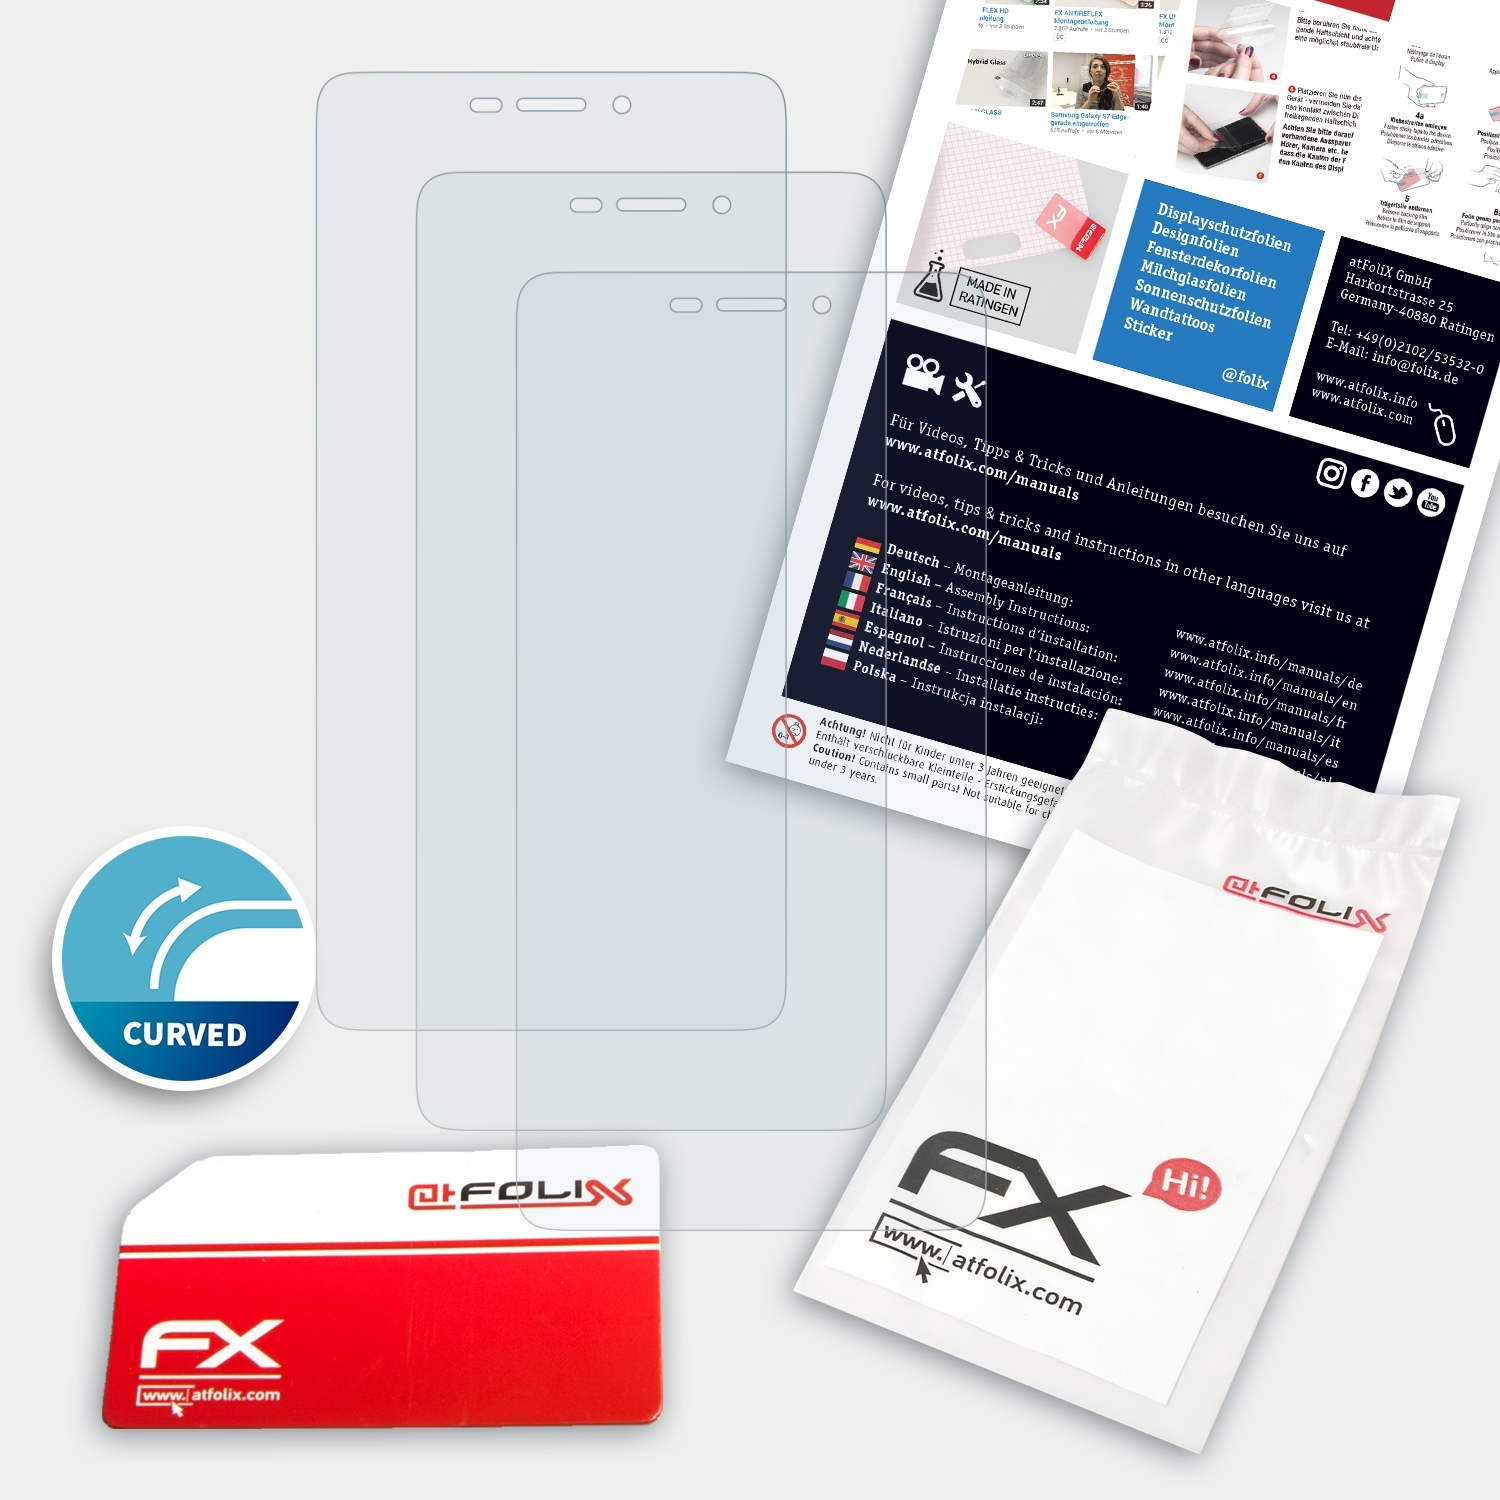 Medion X5520) Displayschutz(für ATFOLIX 3x FX-ActiFleX